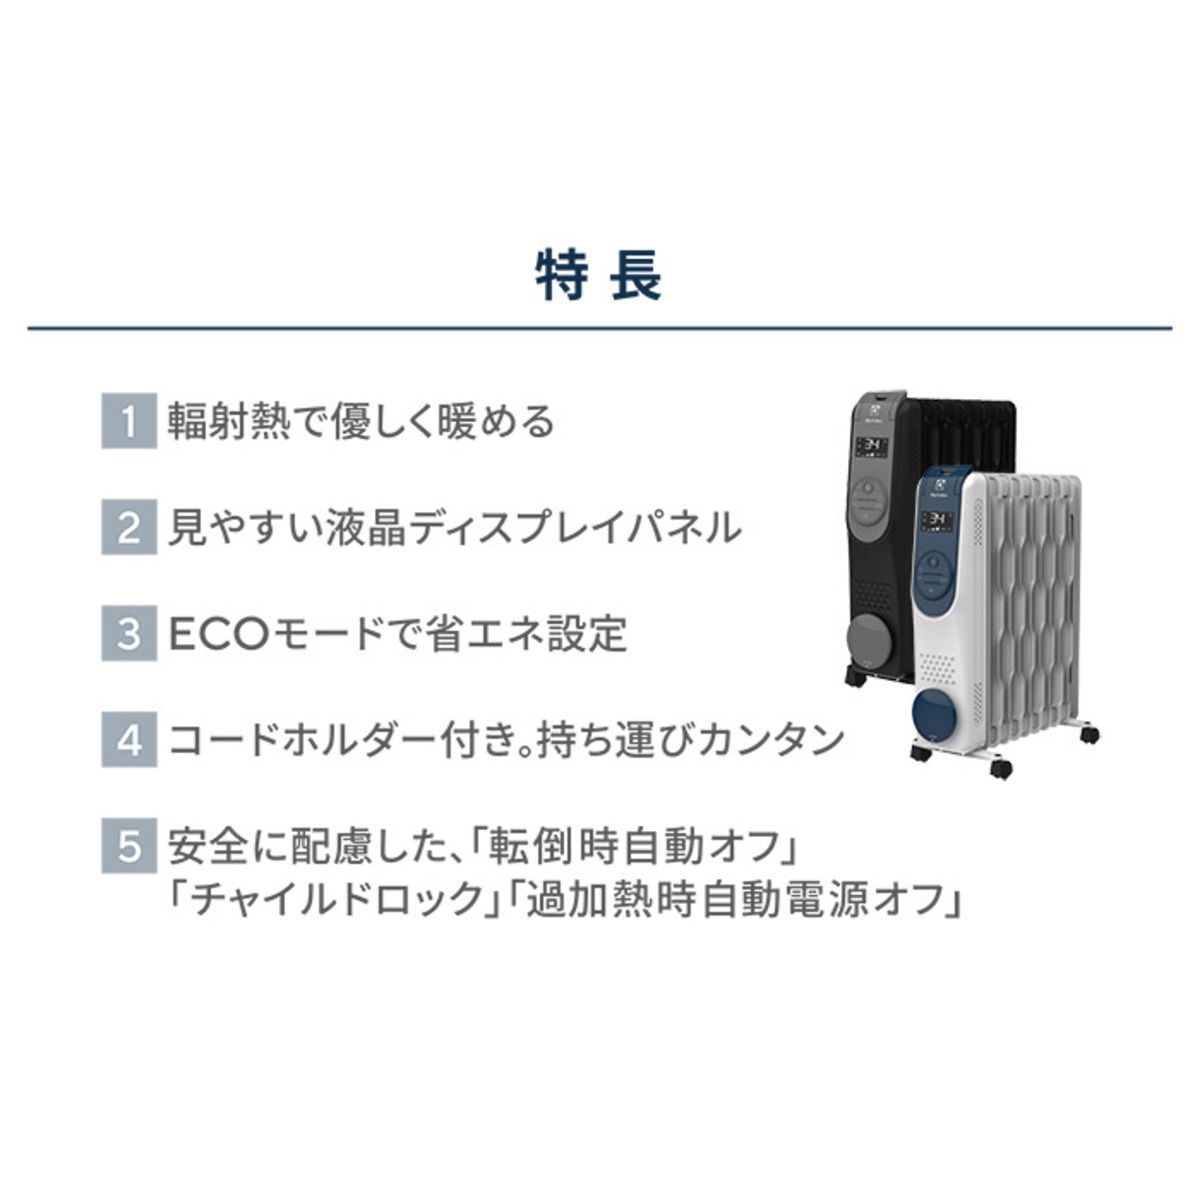 エレクトロラックス乾燥しにくいオイルヒーター2台セット - QVC.jp